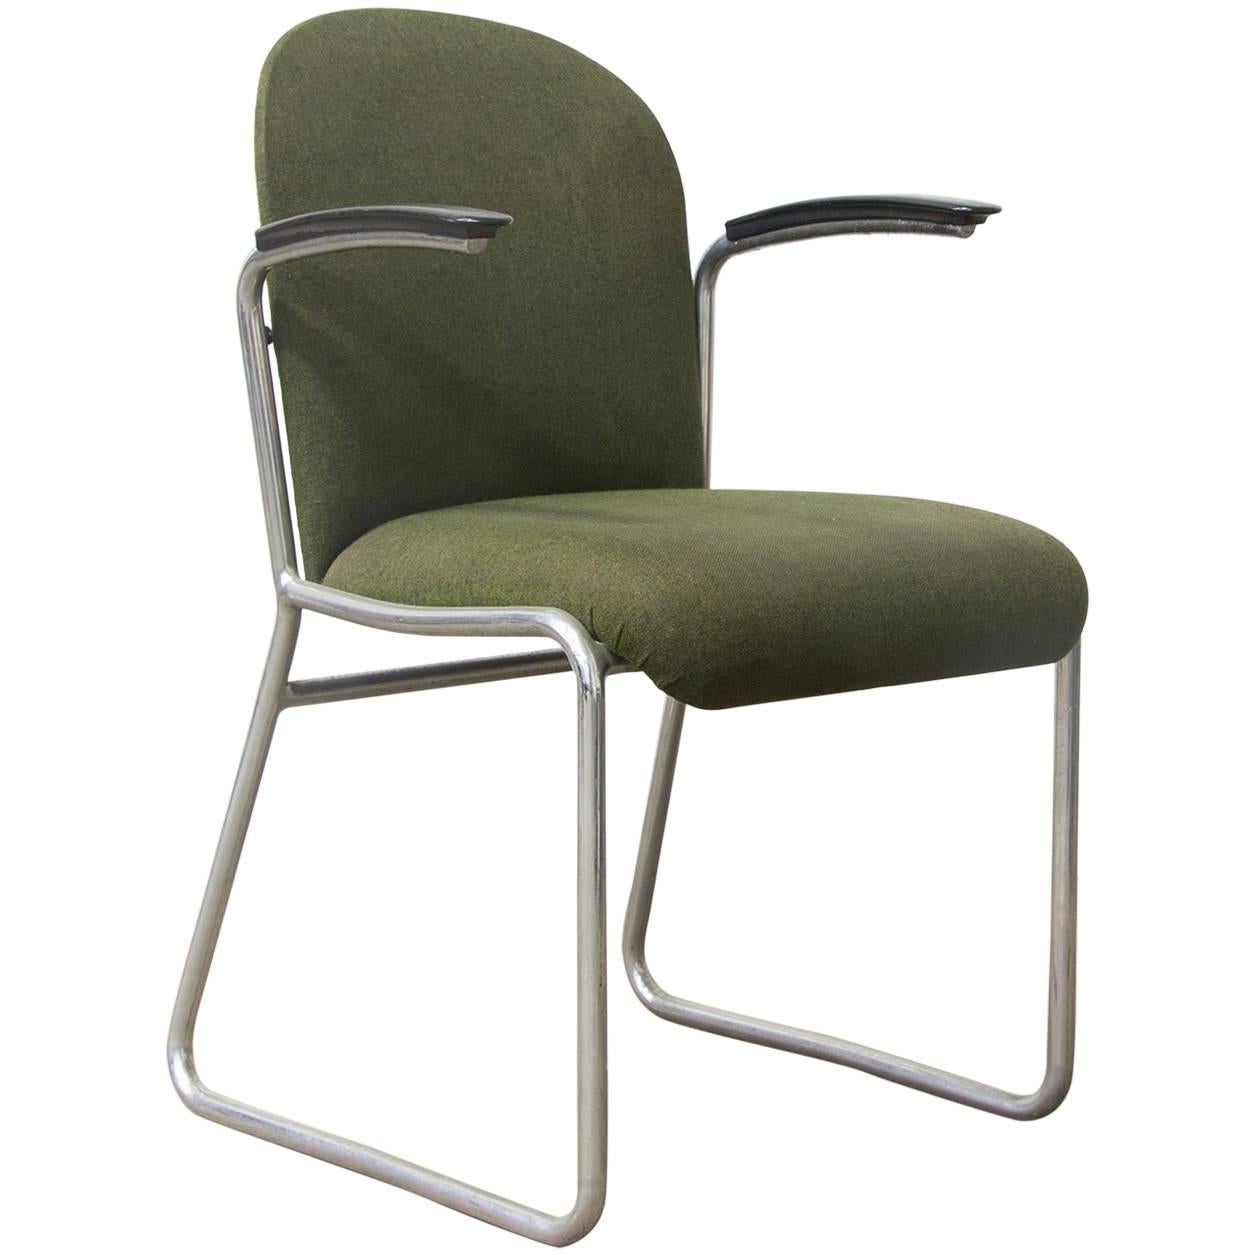 1935 W.H. Gispen for Gispen, Rare Framed 413R Side Chair, Original Green Fabric For Sale